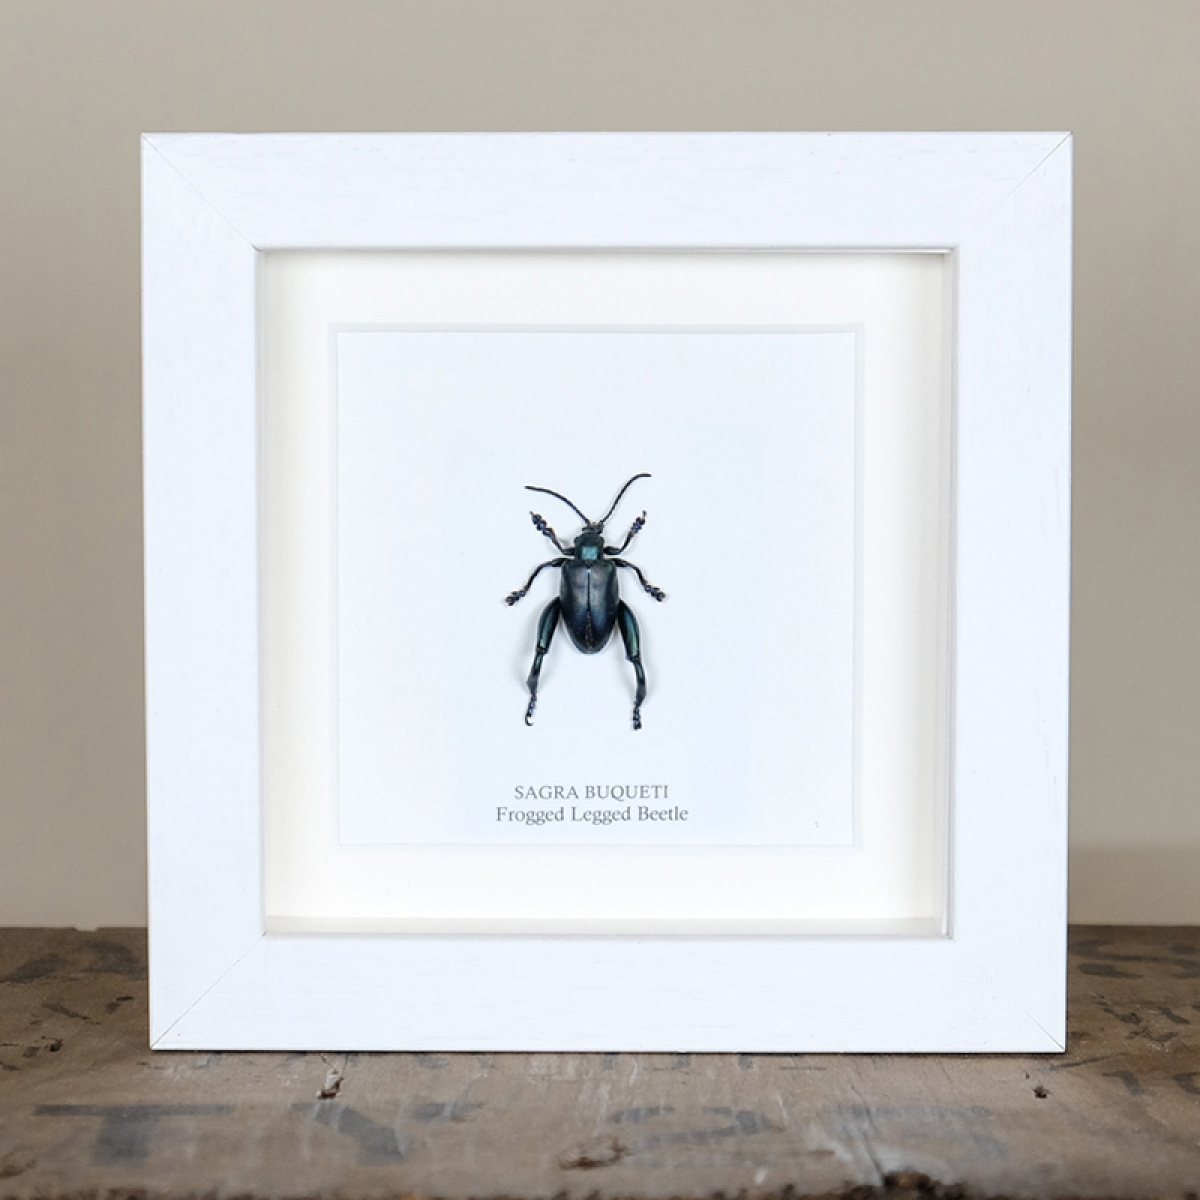 Frogged Legged Beetle in Box Frame (Sagra buqueti)